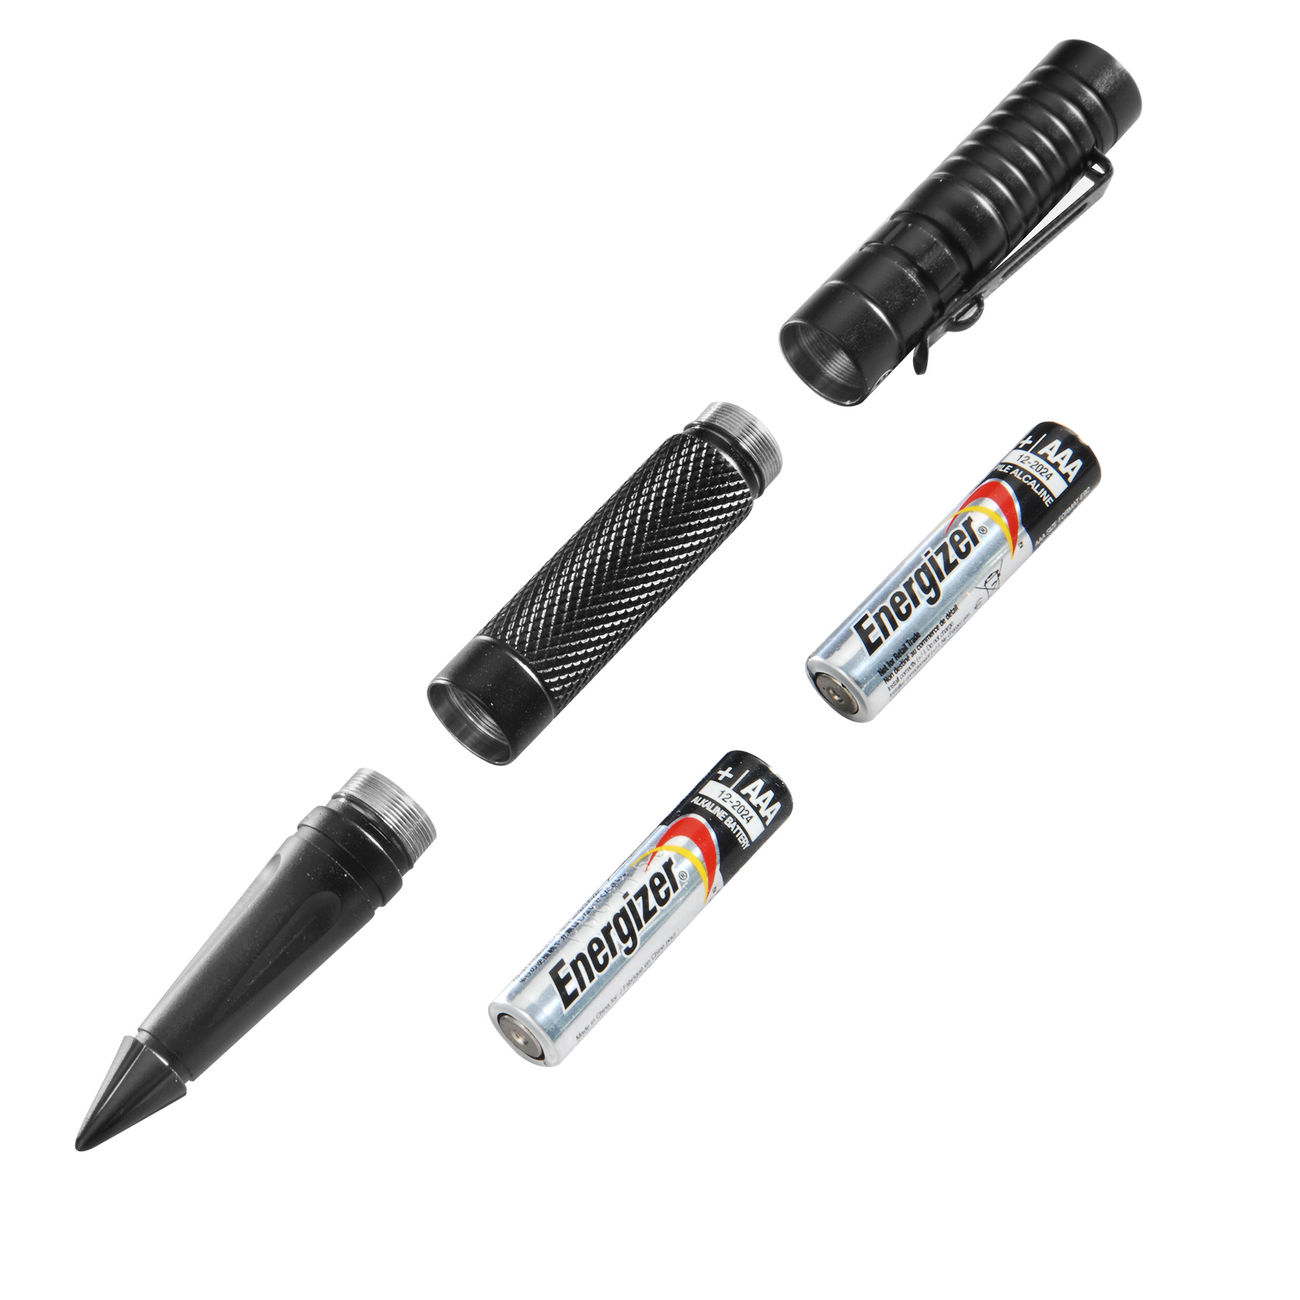 Smith & Wesson Tactical Pen Kubotan mit LED Lampe Bild 1